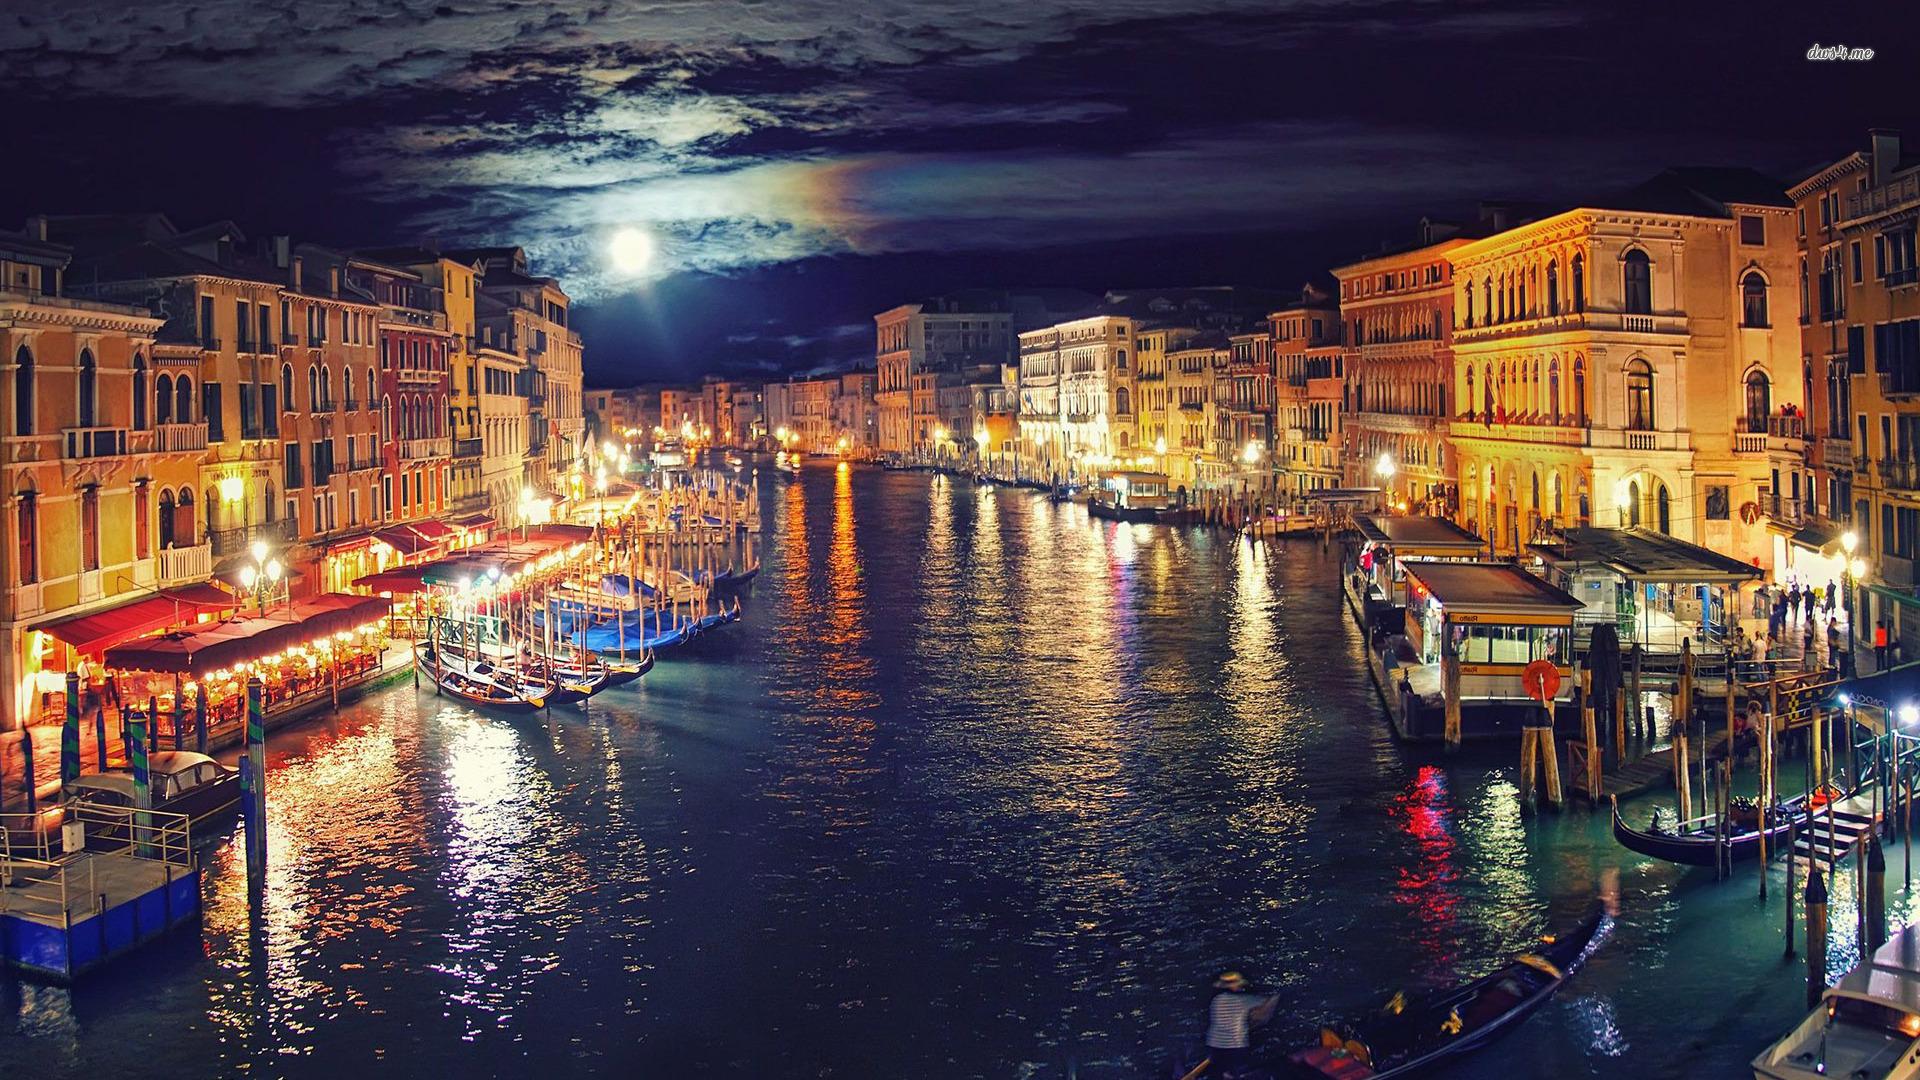 Venice at night wallpaper wallpaper